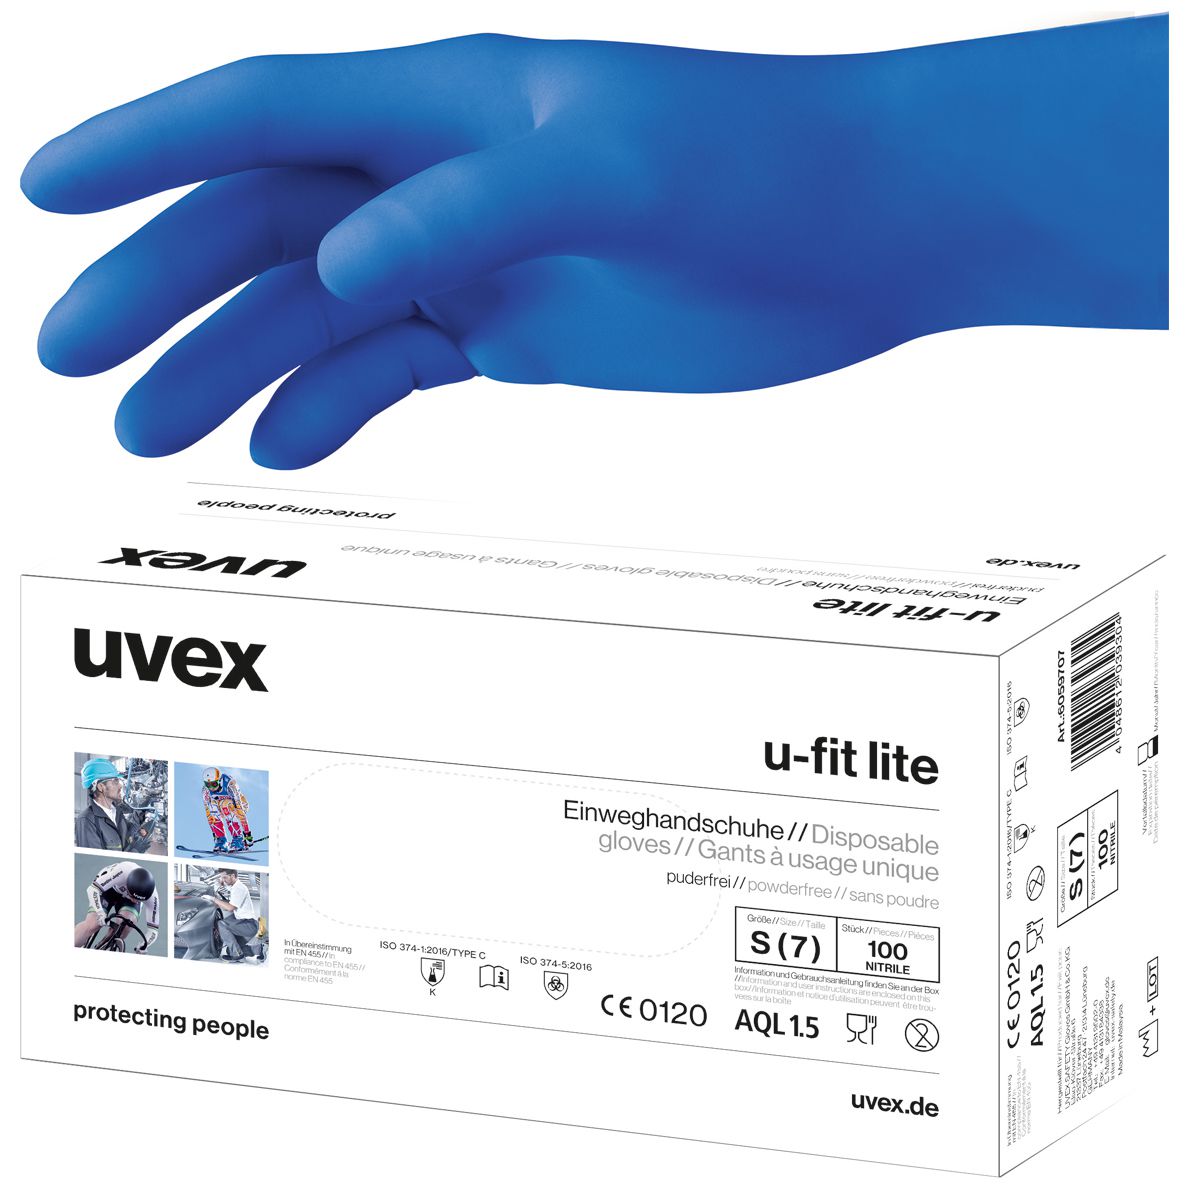 Uvex u-fit lite Nitril-Untersuchungshandschuhe - EN 374 & 455 - Blau - 09/L